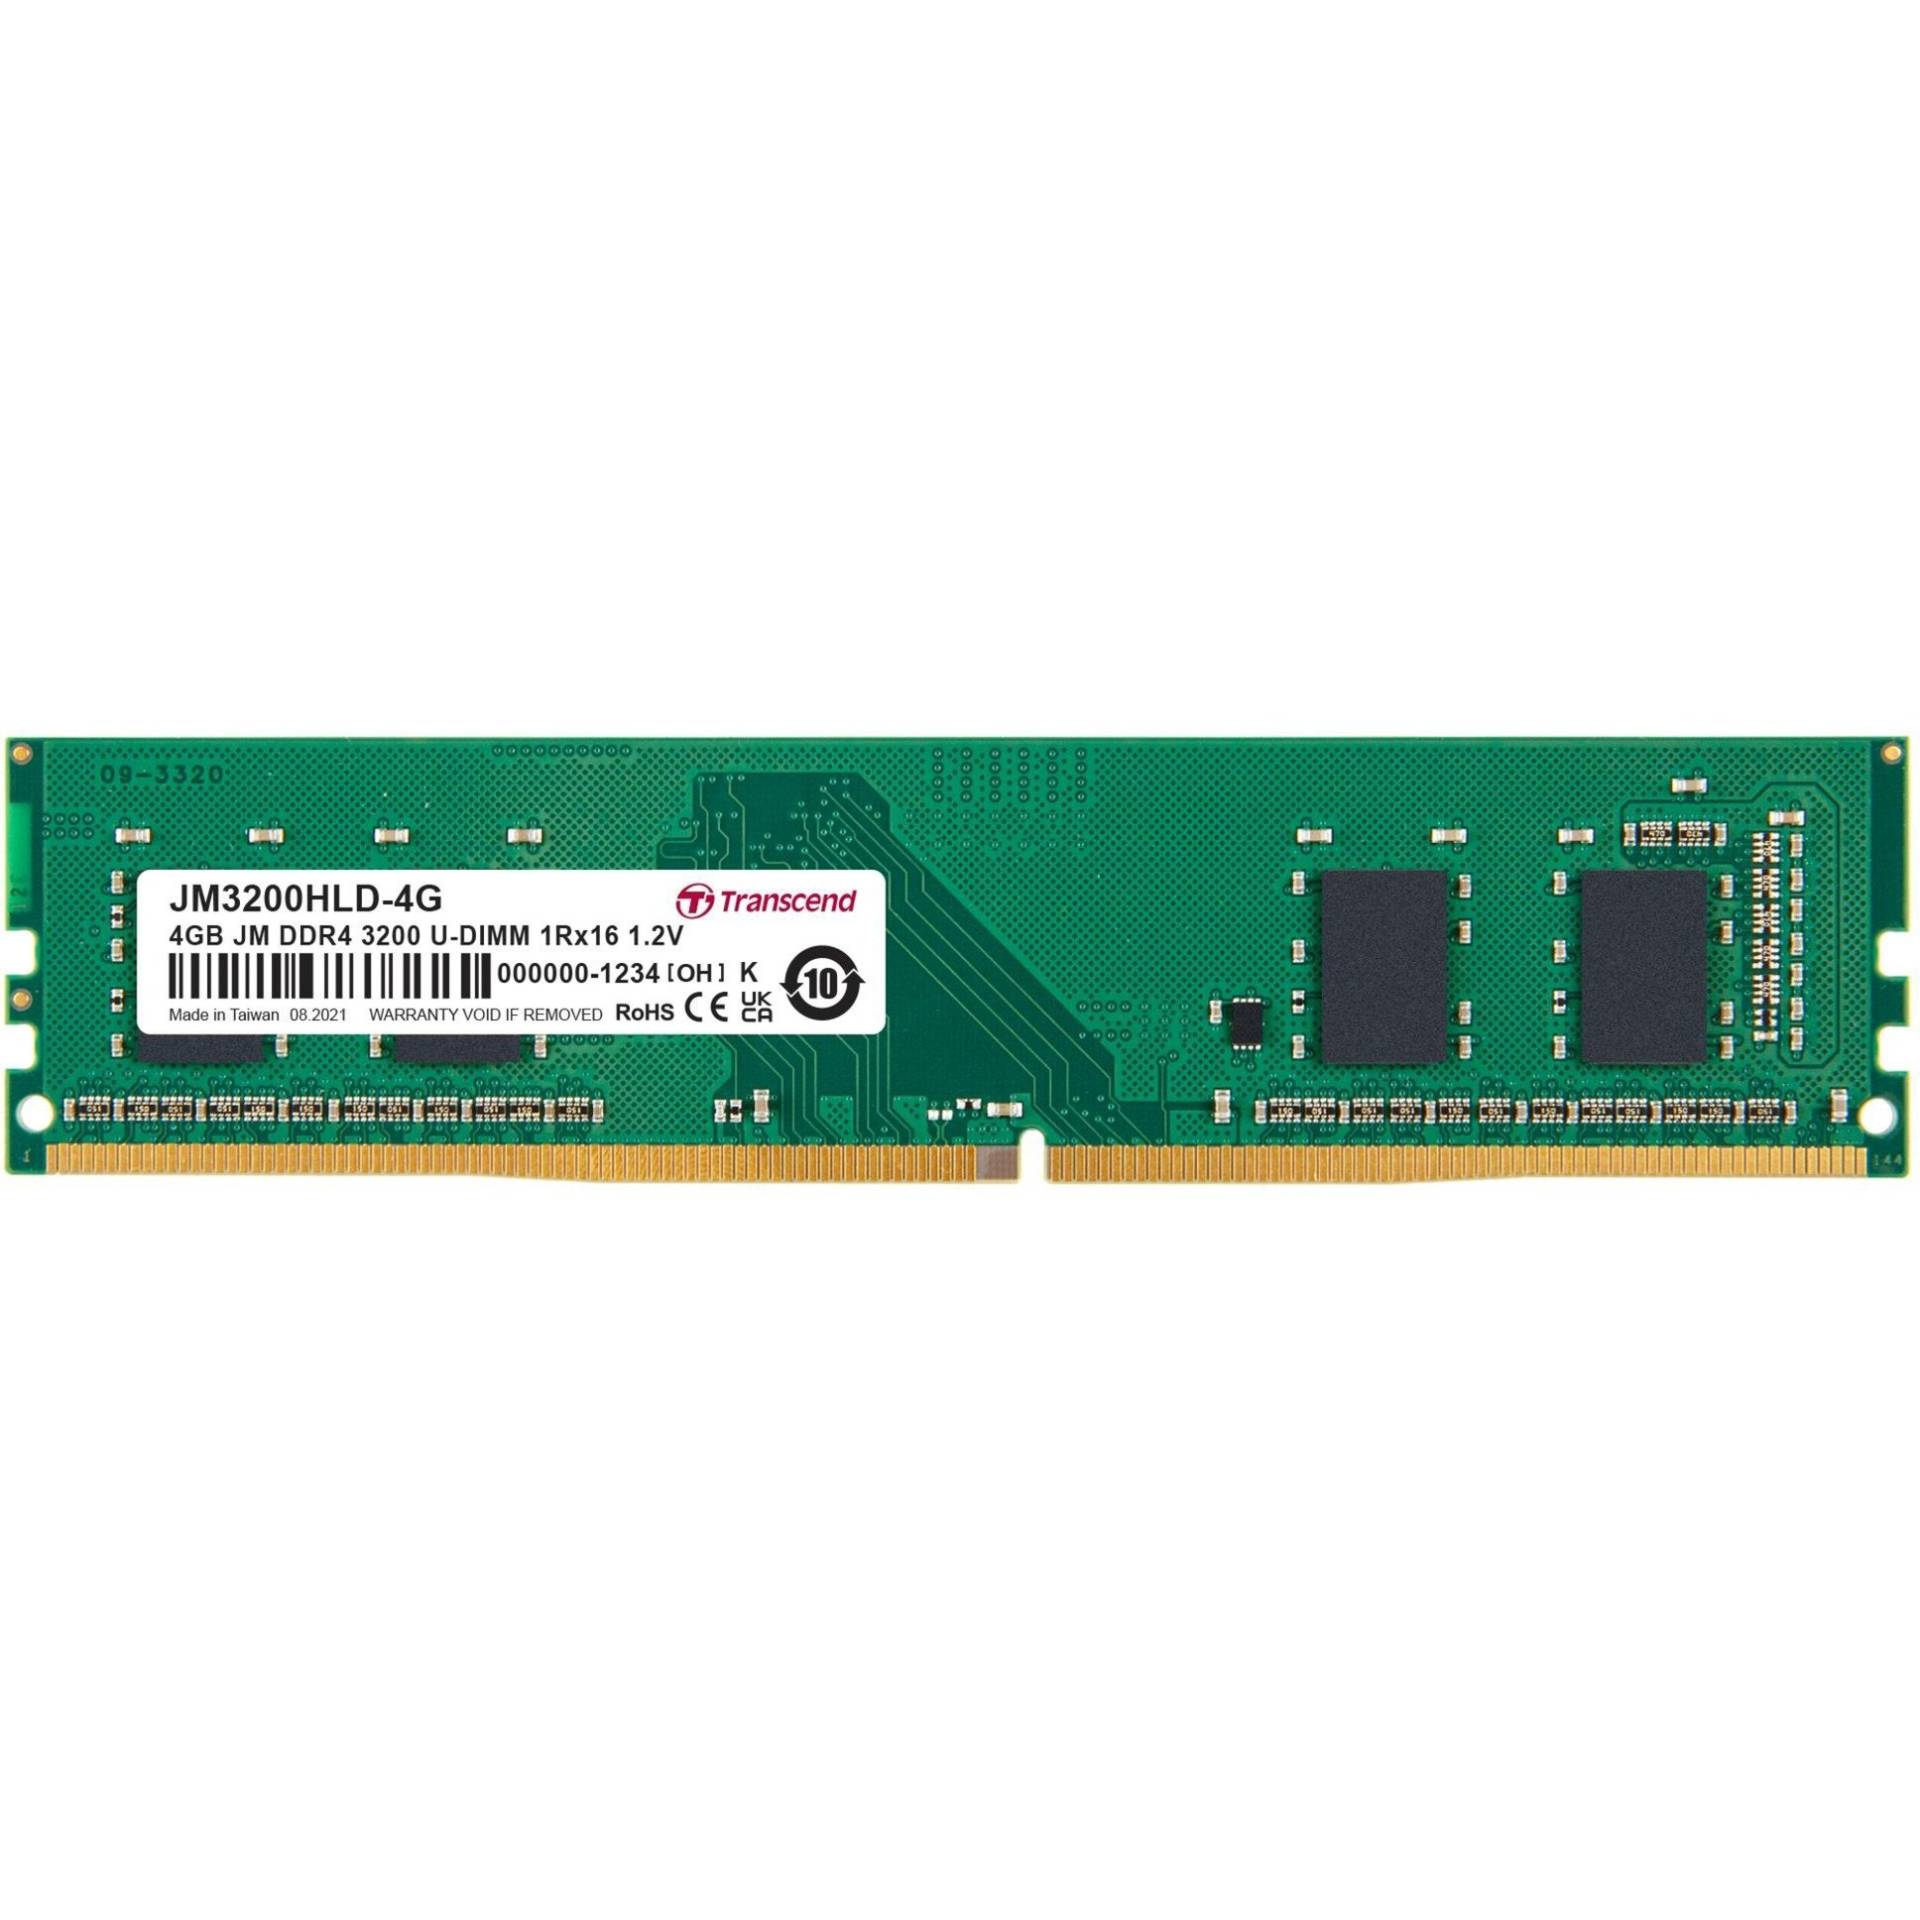 DIMM 4 GB DDR4-3200, Arbeitsspeicher von Transcend